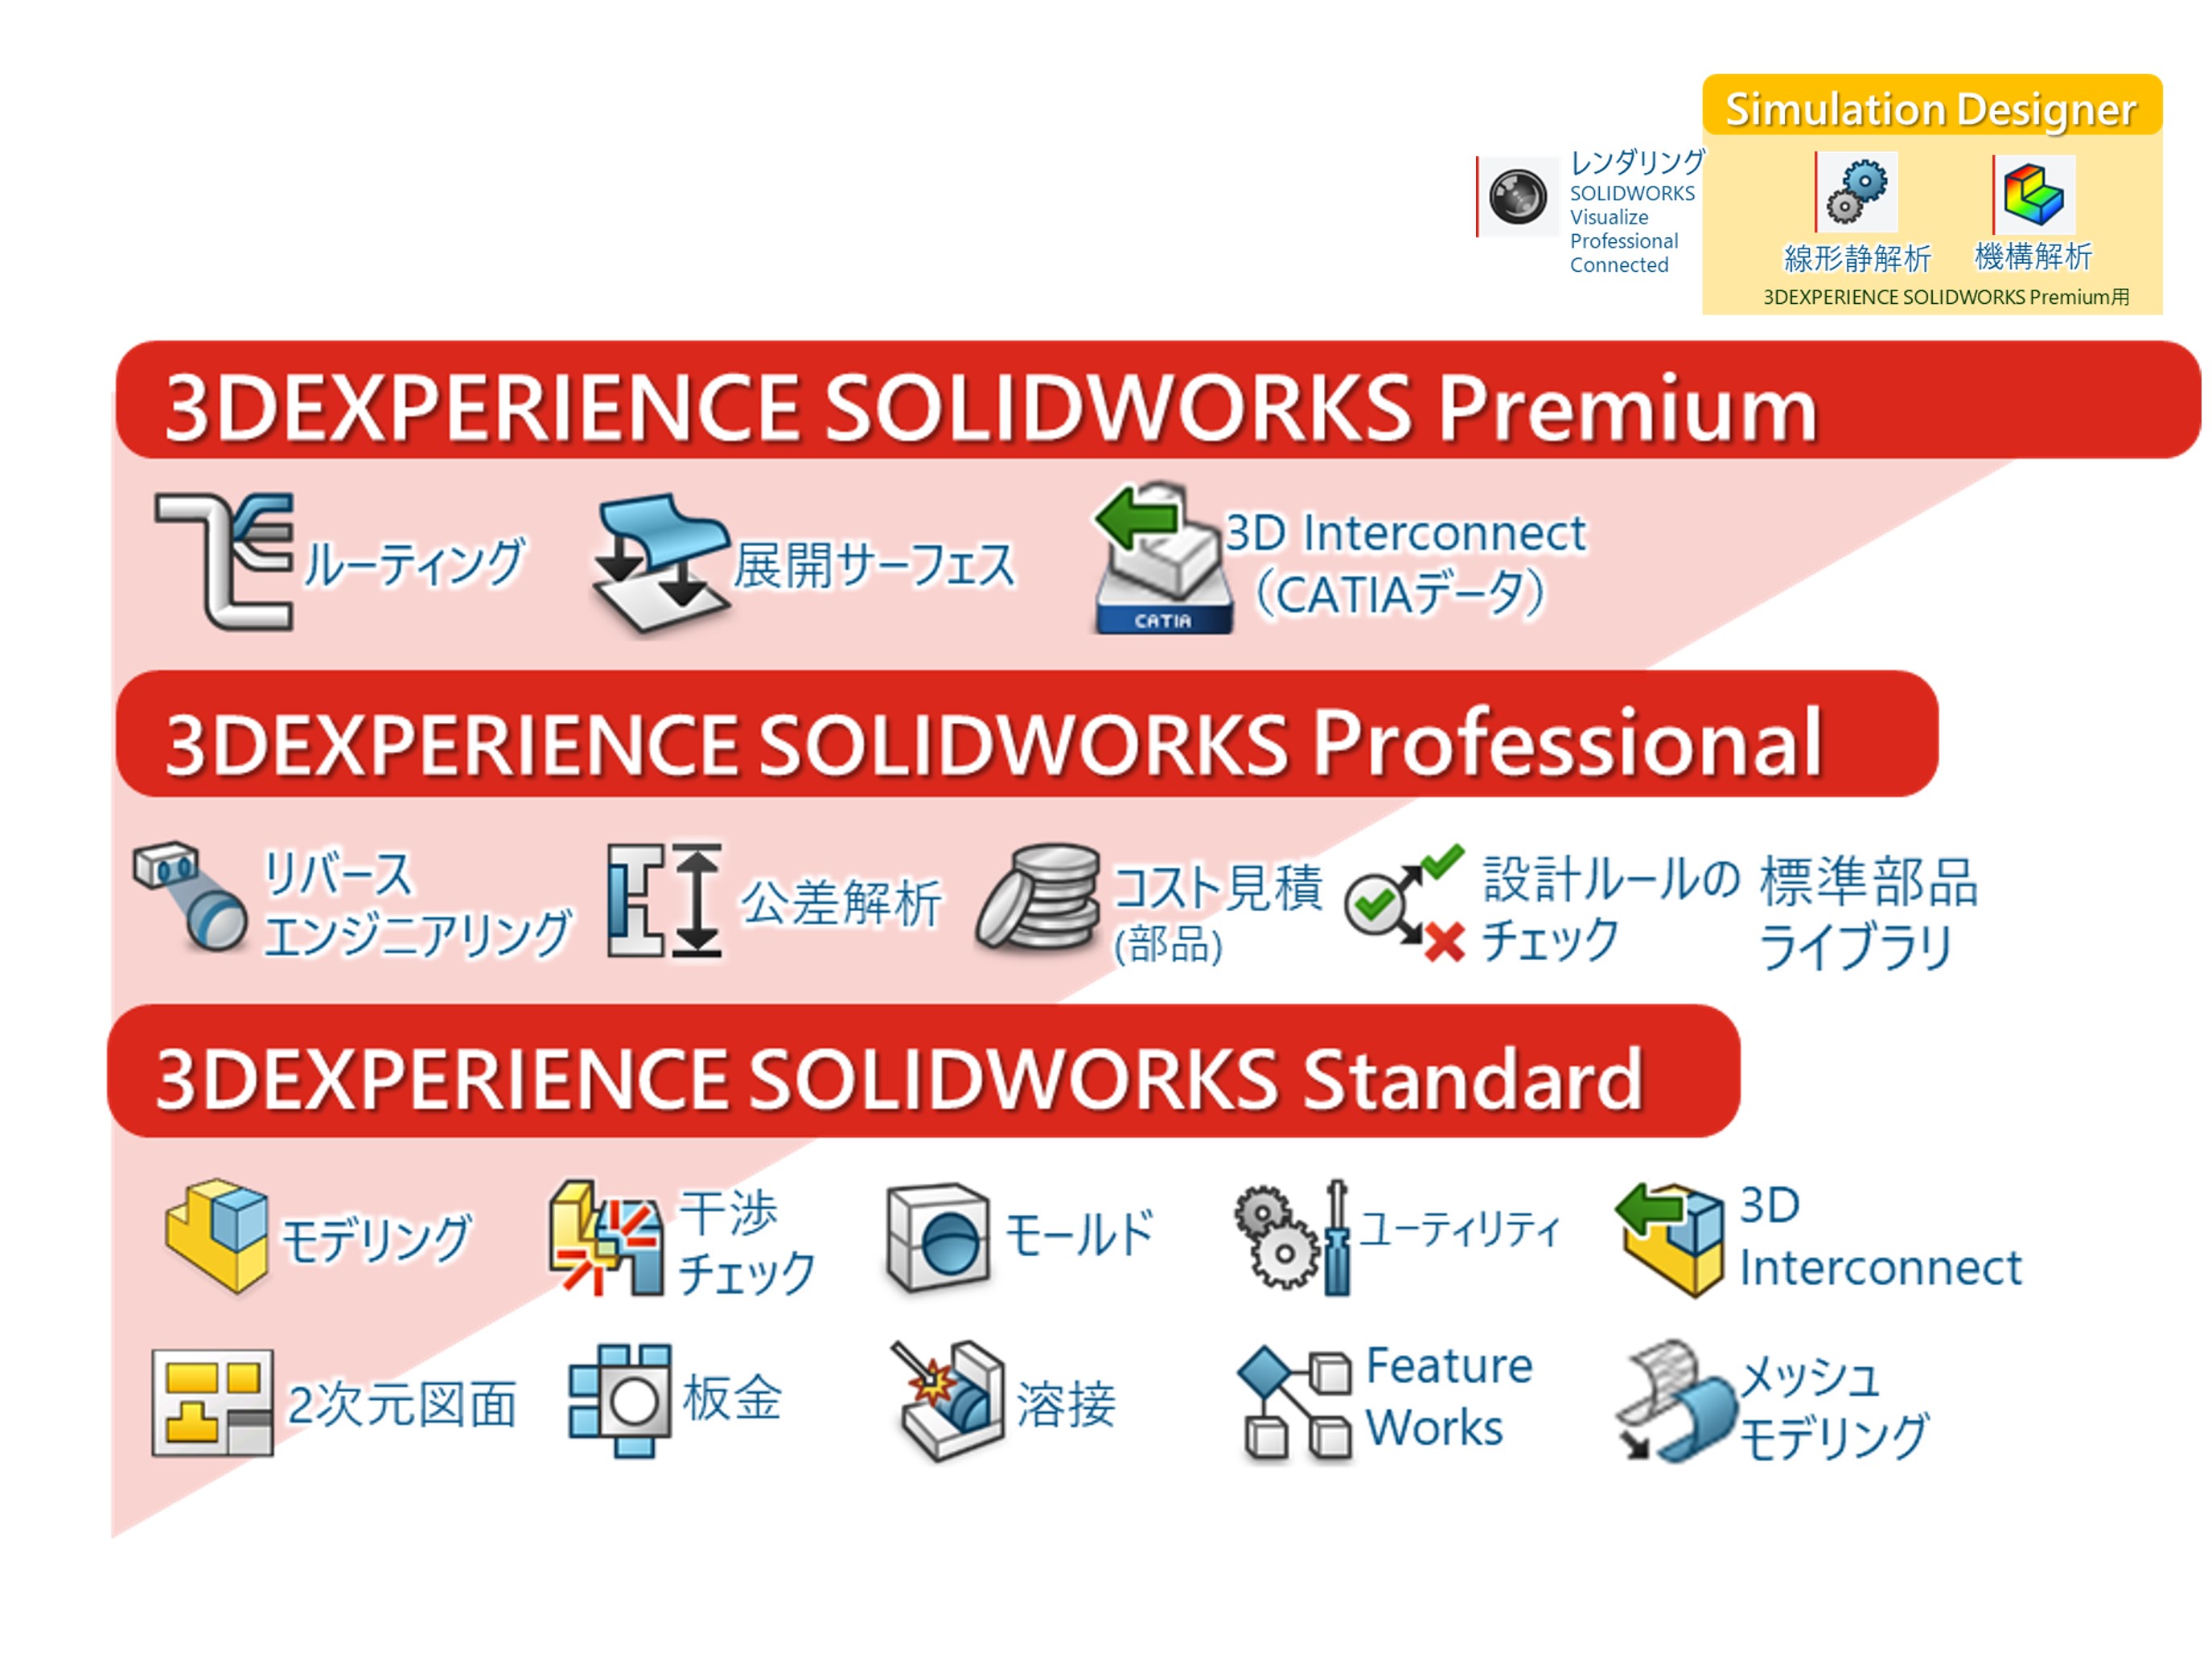 3DEXPERIENCE SOLIDWORKS Premium